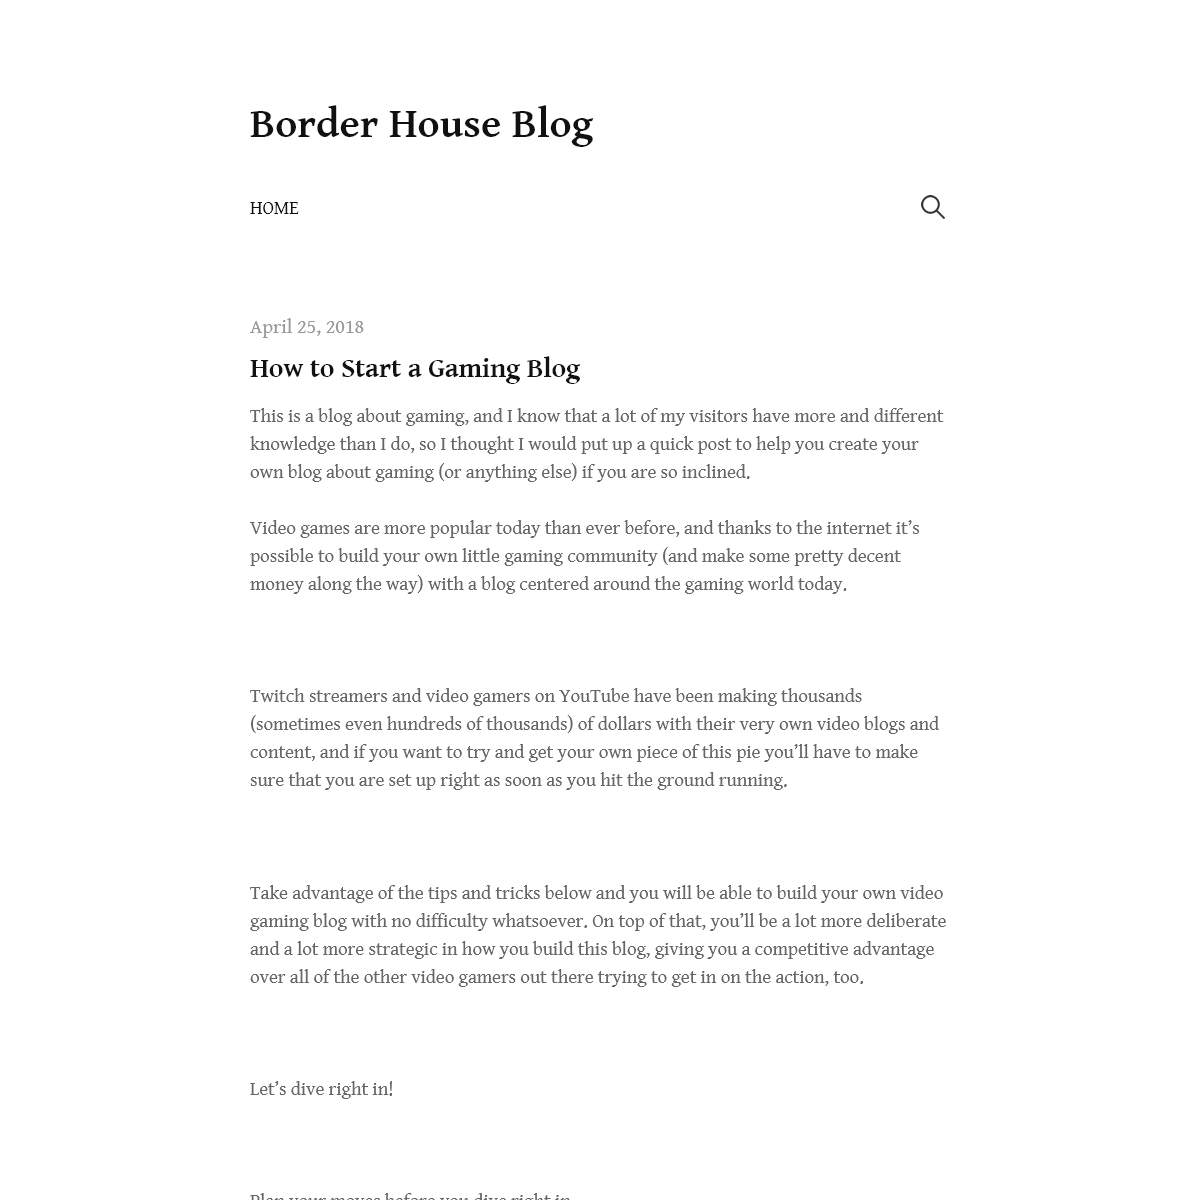 A complete backup of borderhouseblog.com